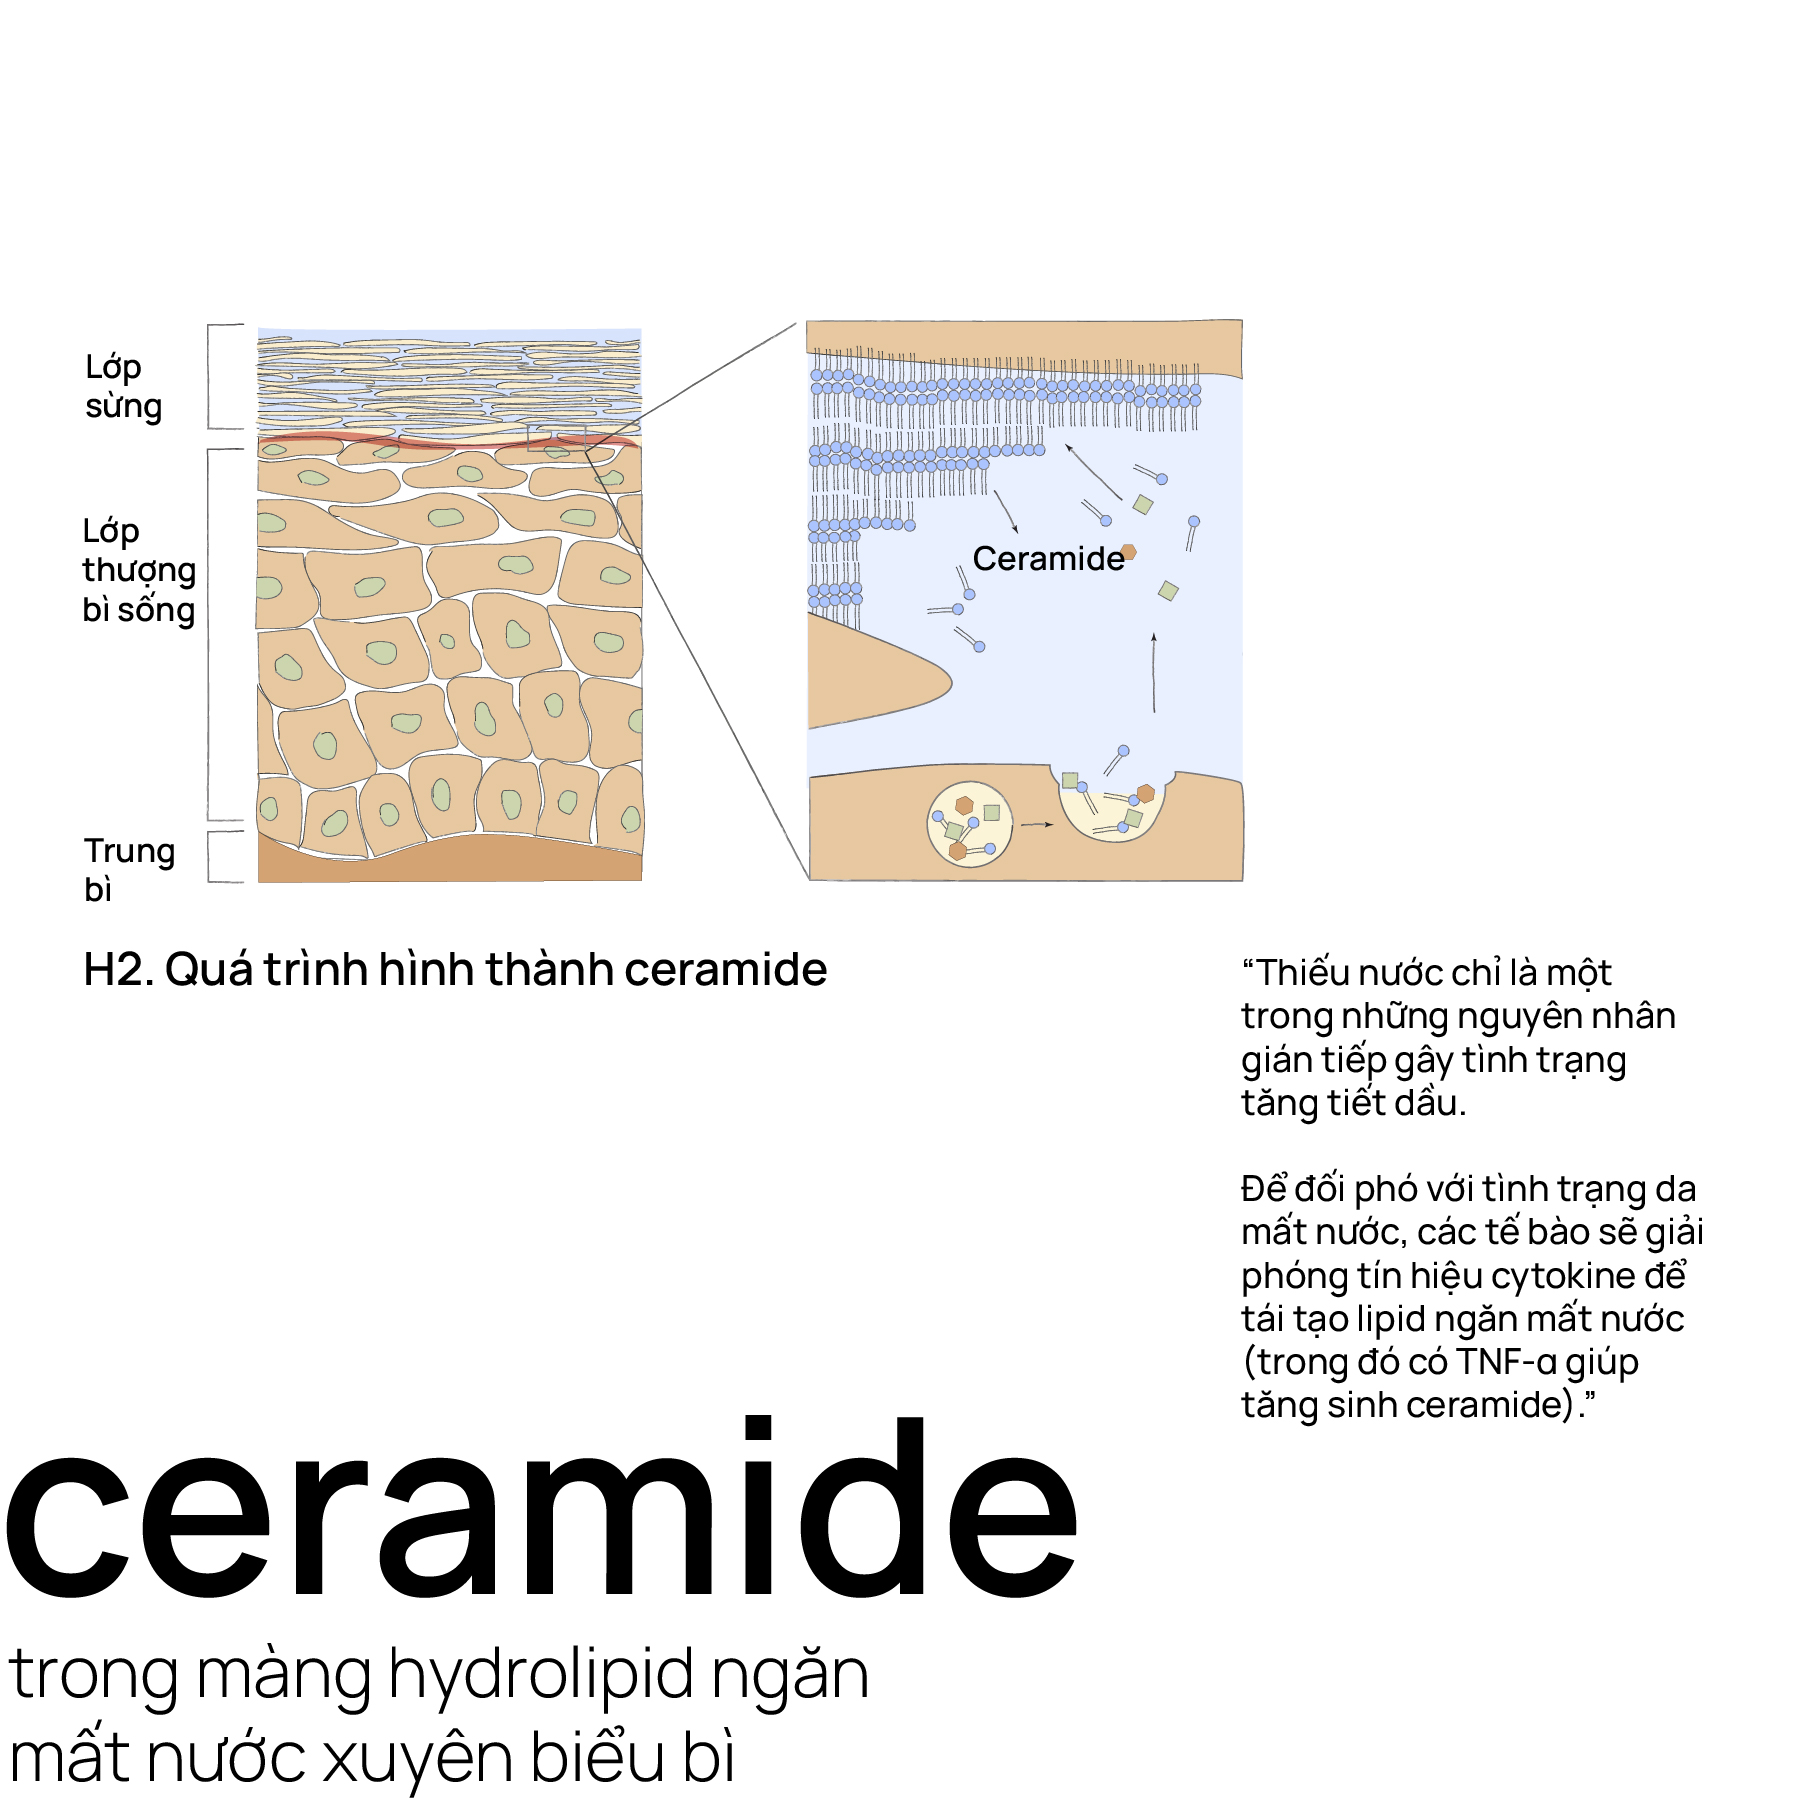 Ceramide trong màng hydrolipid ngăn mất nước xuyên biểu bì